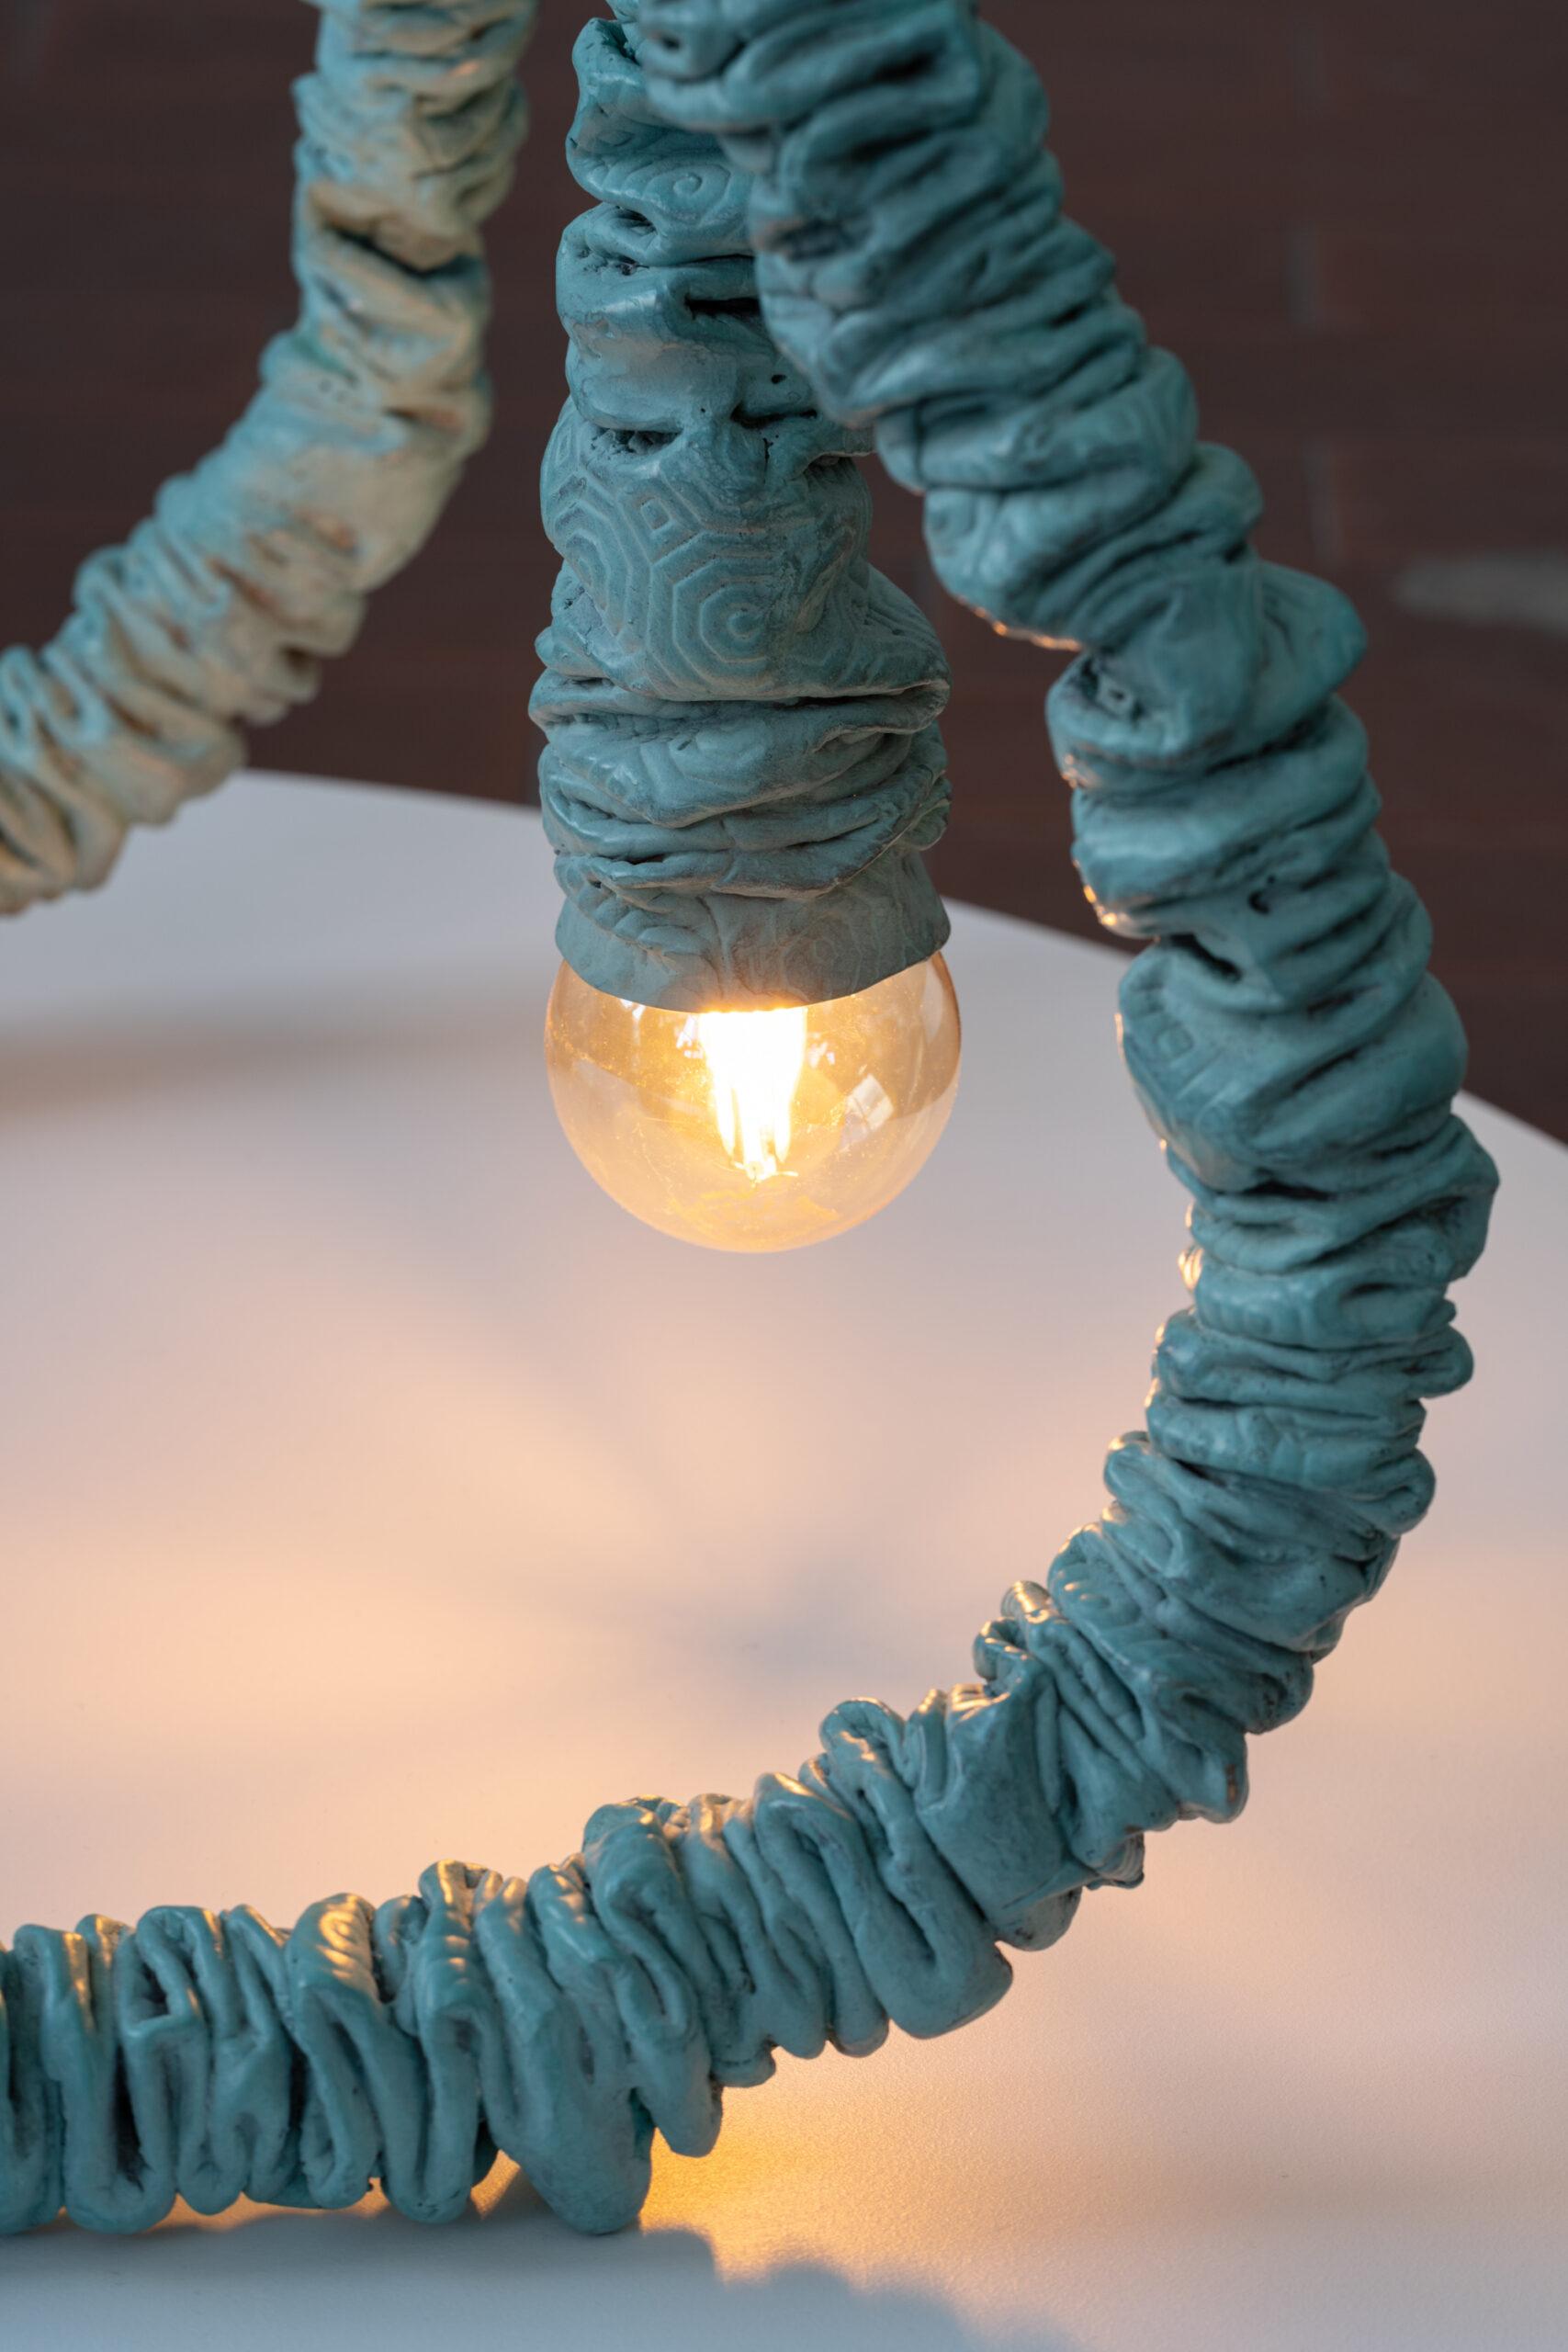 Les deux luminaires Bump the Lamp de Nicolas Luminaire, l'un à poser au sol et l'autre sur un meuble, font écho à ses sculptures tubulaires en métal cousues par 